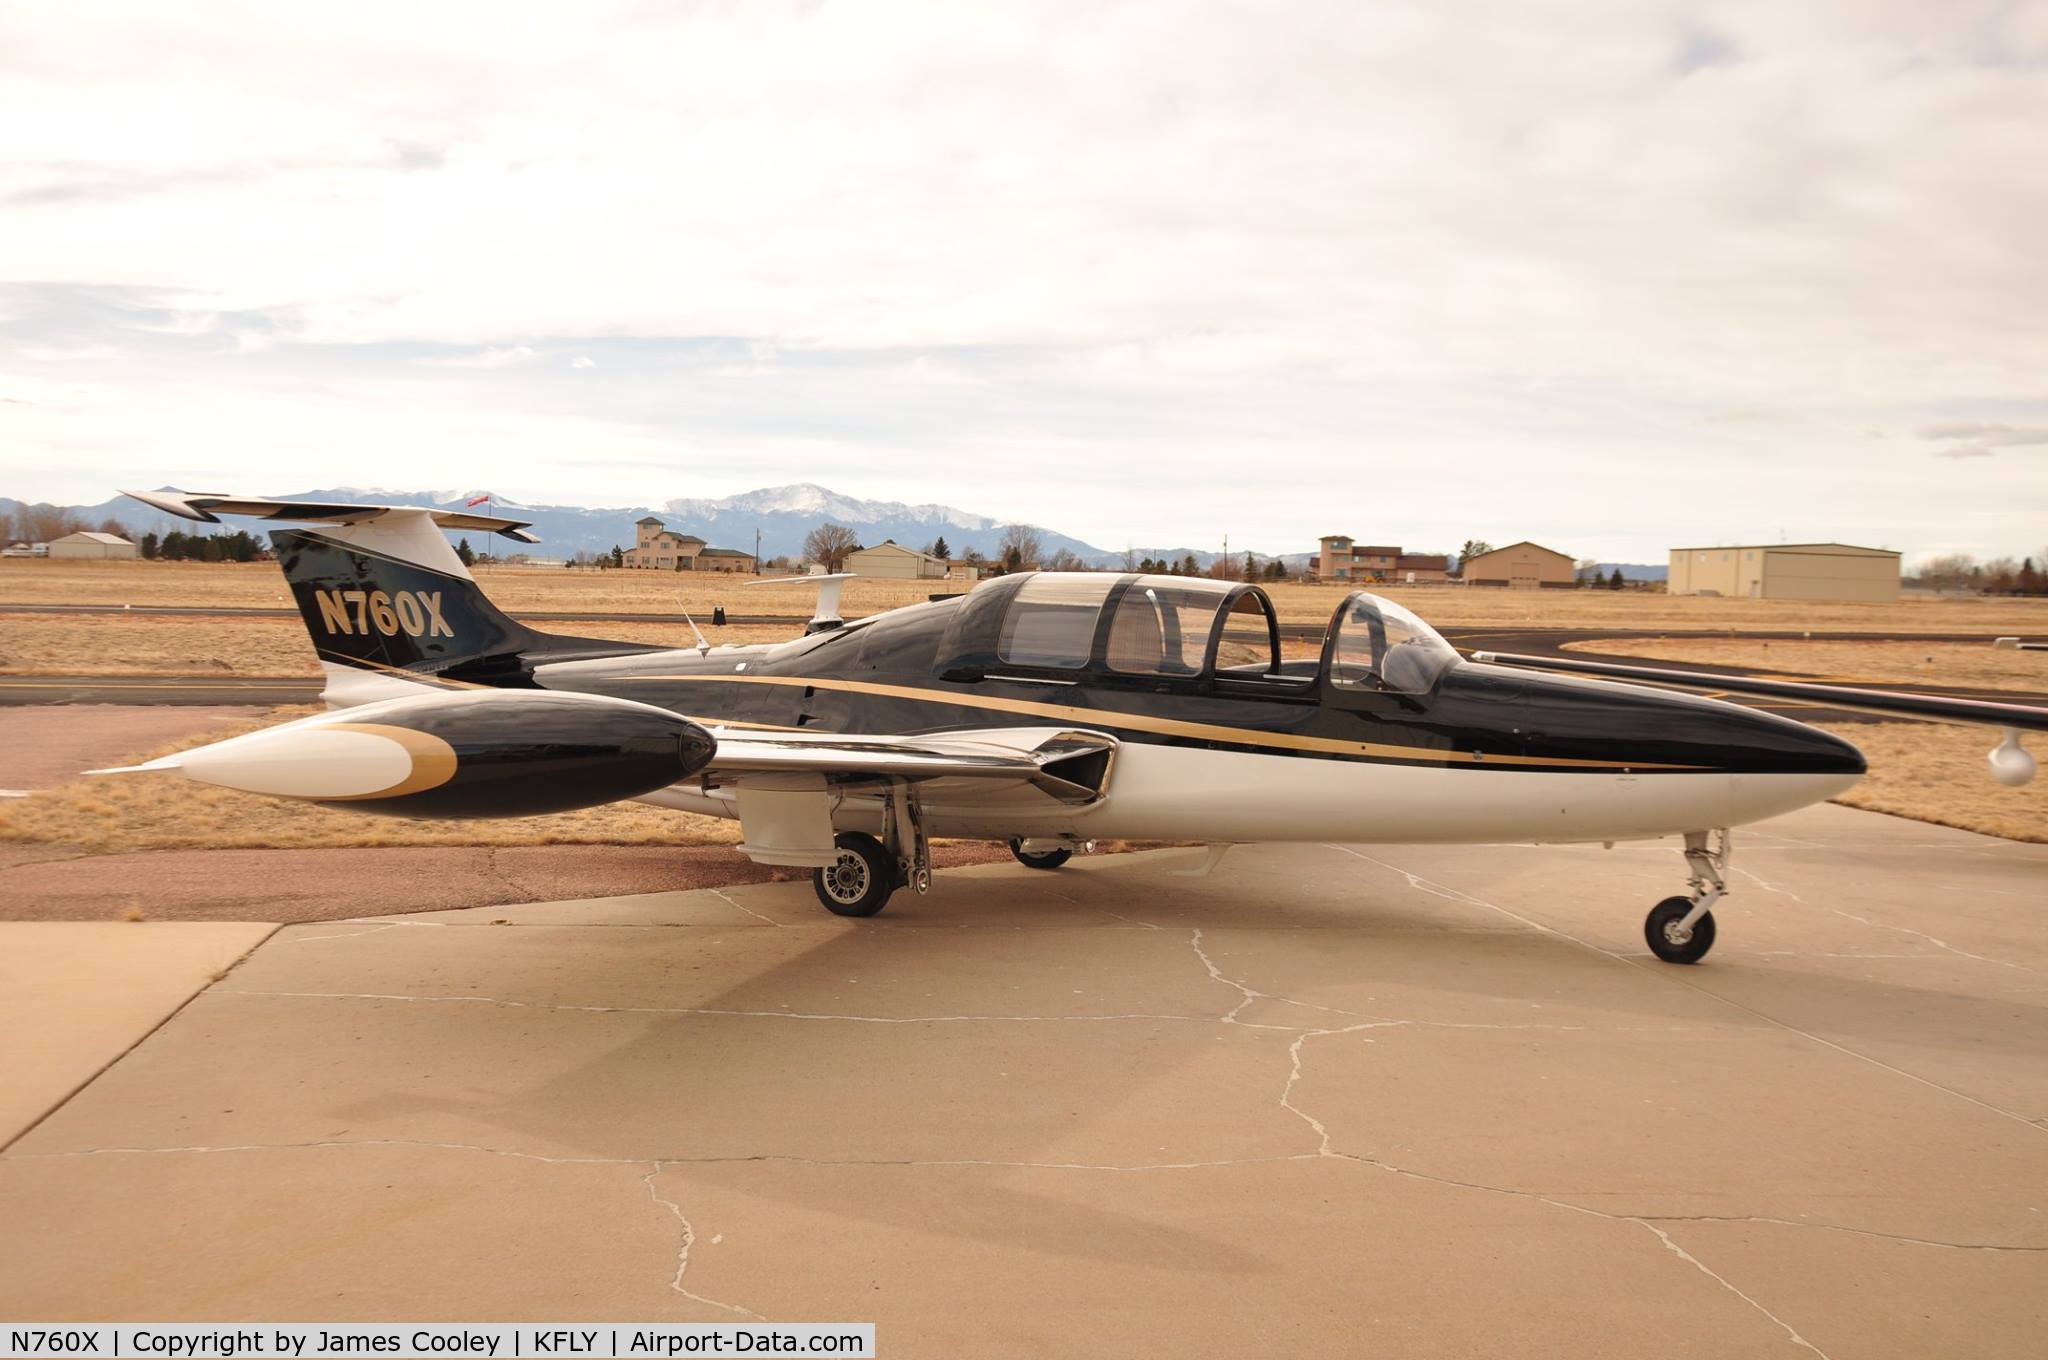 N760X, 1959 Morane-Saulnier MS.760B Paris C/N 0028, Paris Jet II at Meadowlake Airport in Falcon Colorado